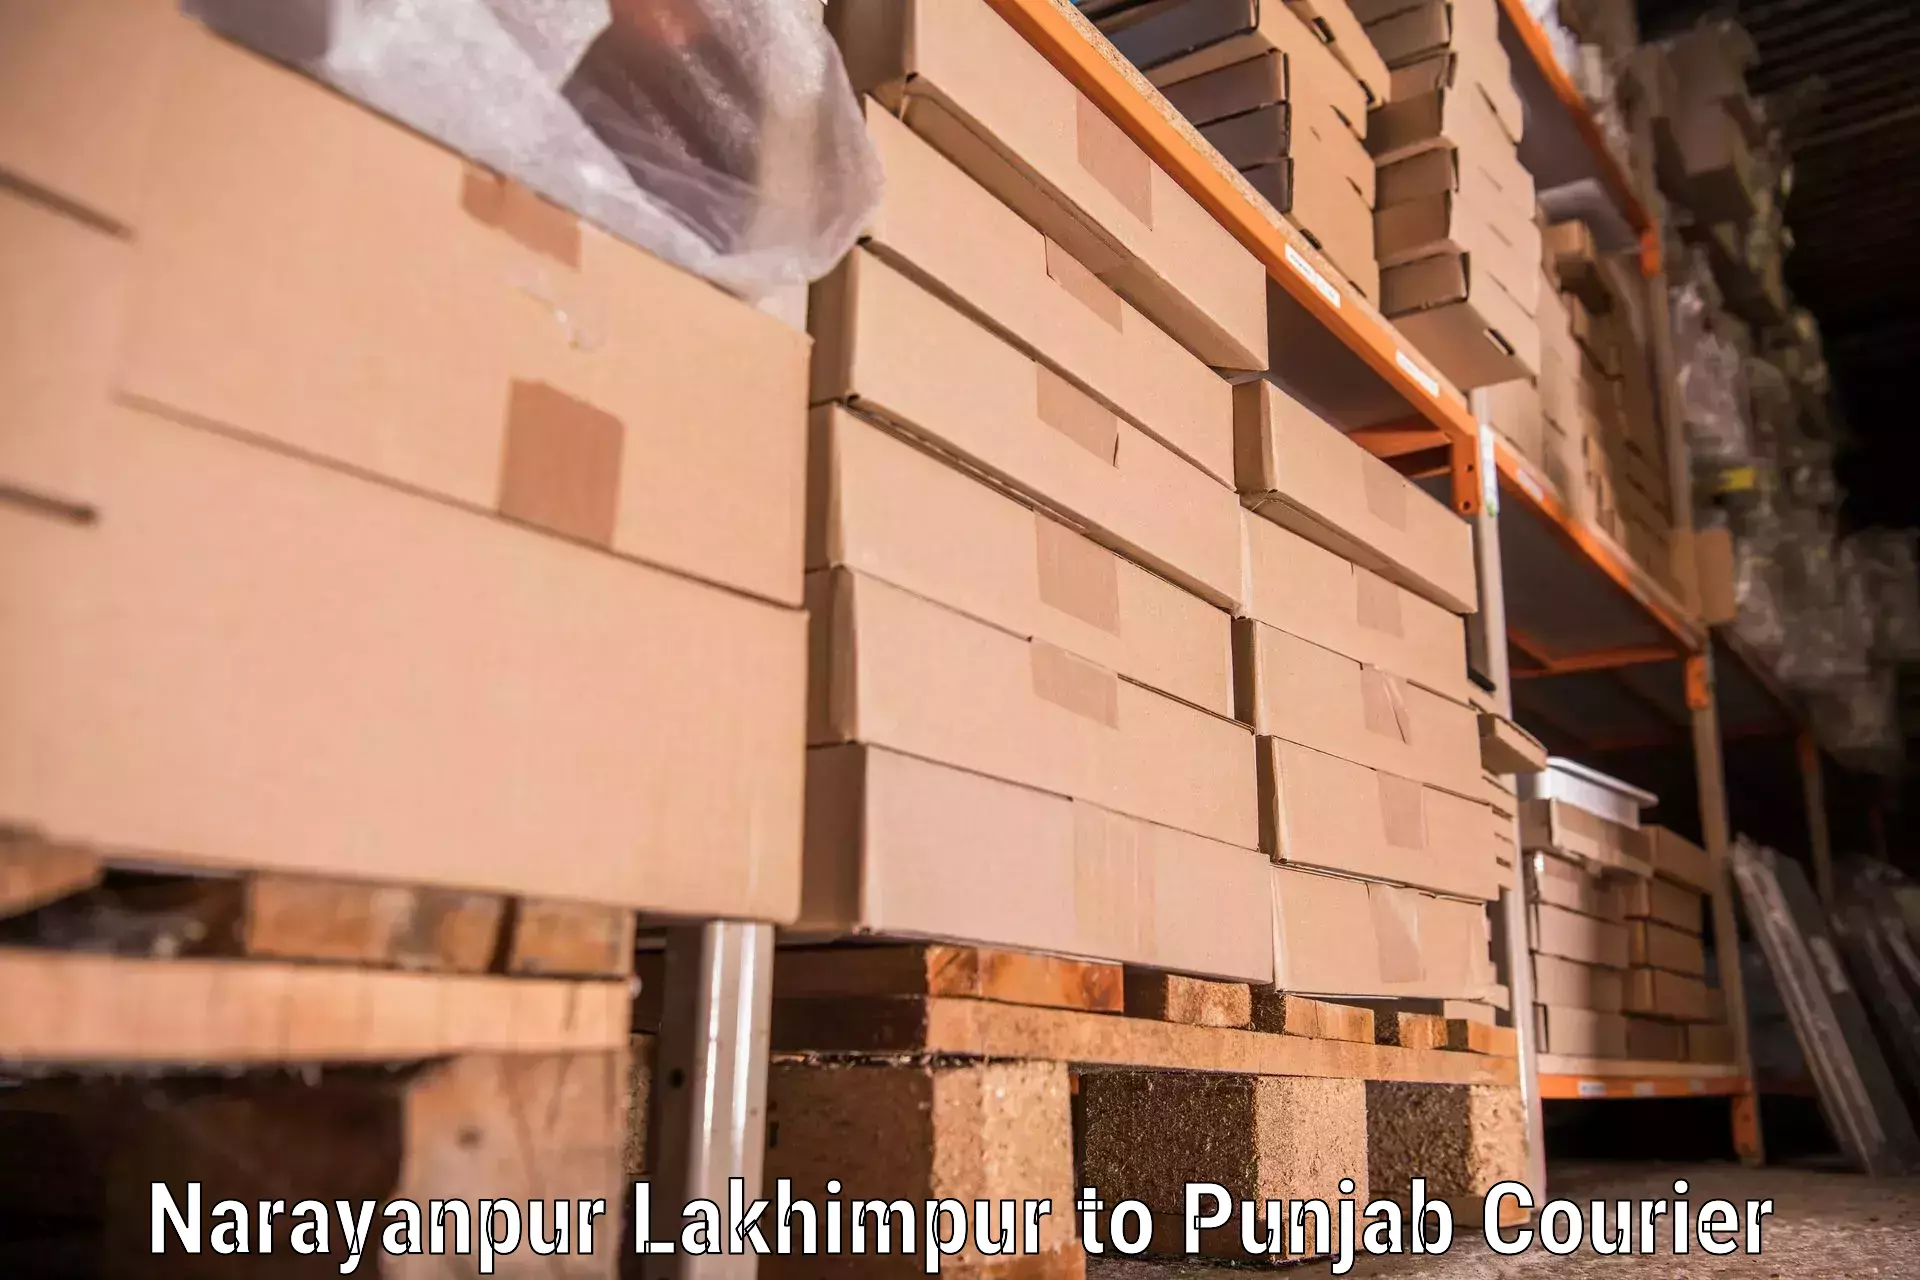 Furniture moving plans Narayanpur Lakhimpur to Mandi Gobindgarh